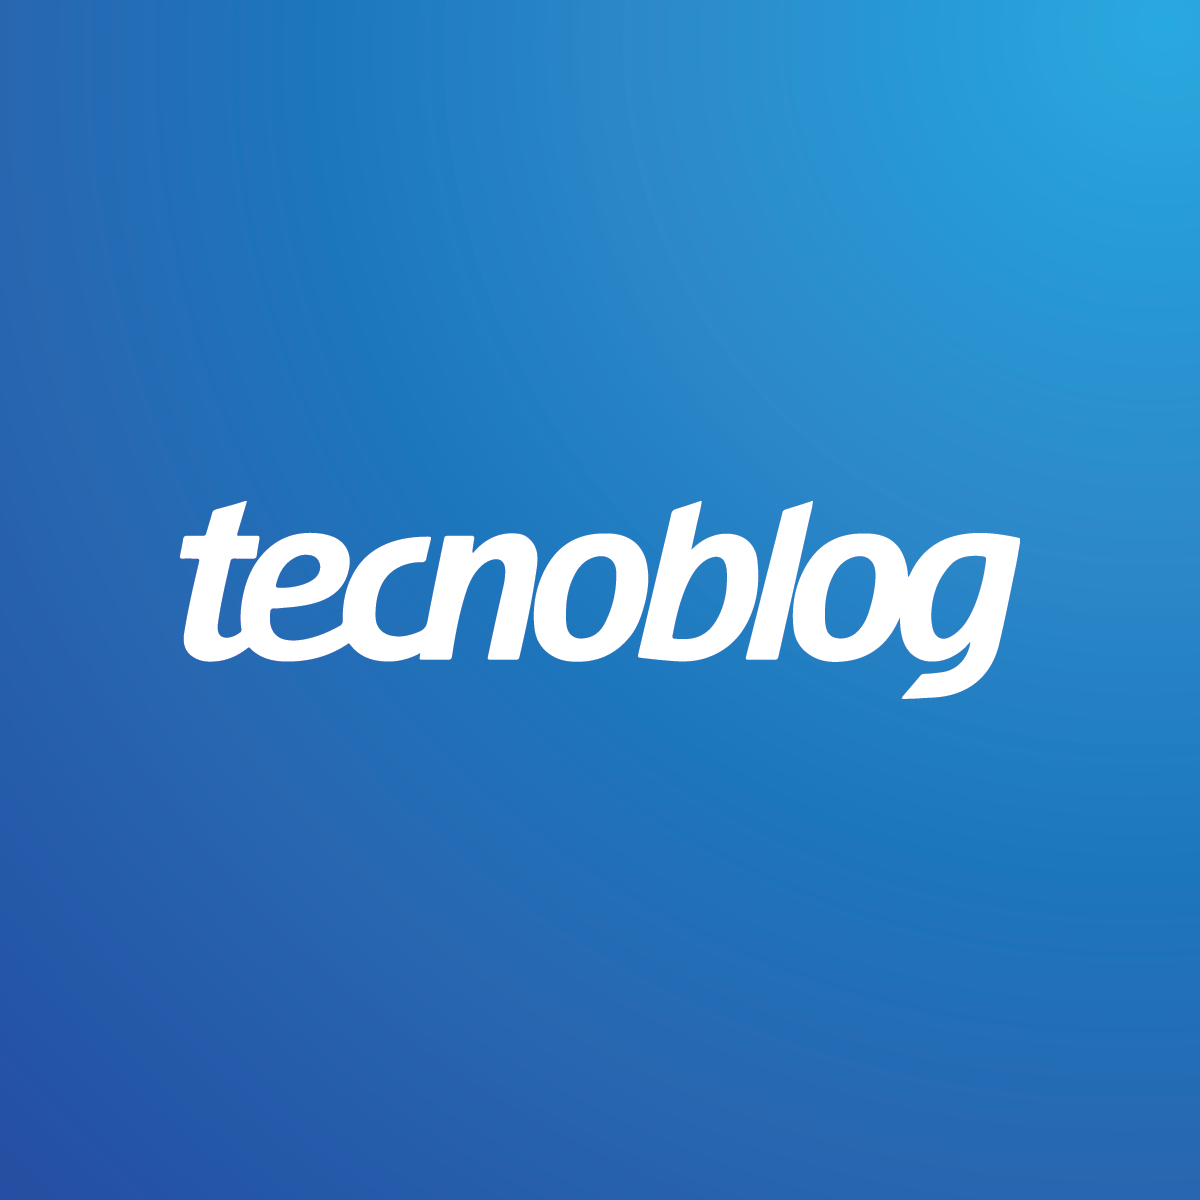 Review Samsung Galaxy A54: equilíbrio é tudo – Tecnoblog